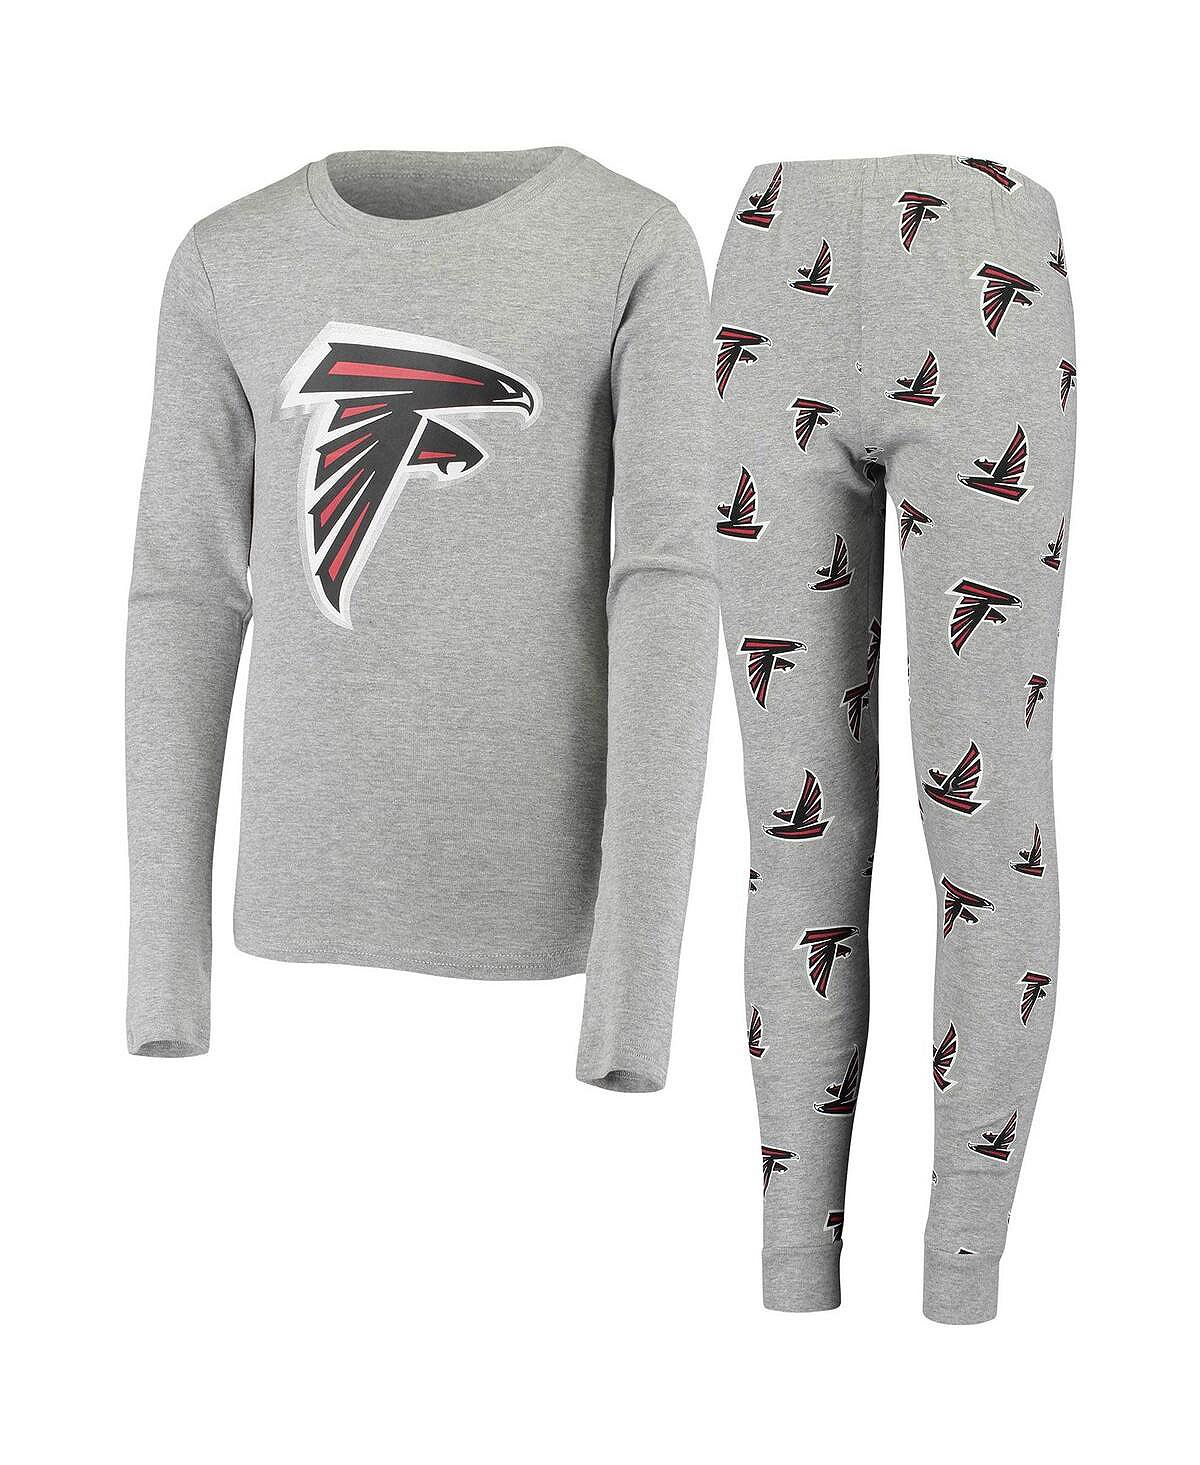 Серый комплект для сна с футболкой и брюками с длинными рукавами Big Boys Atlanta Falcons Outerstuff